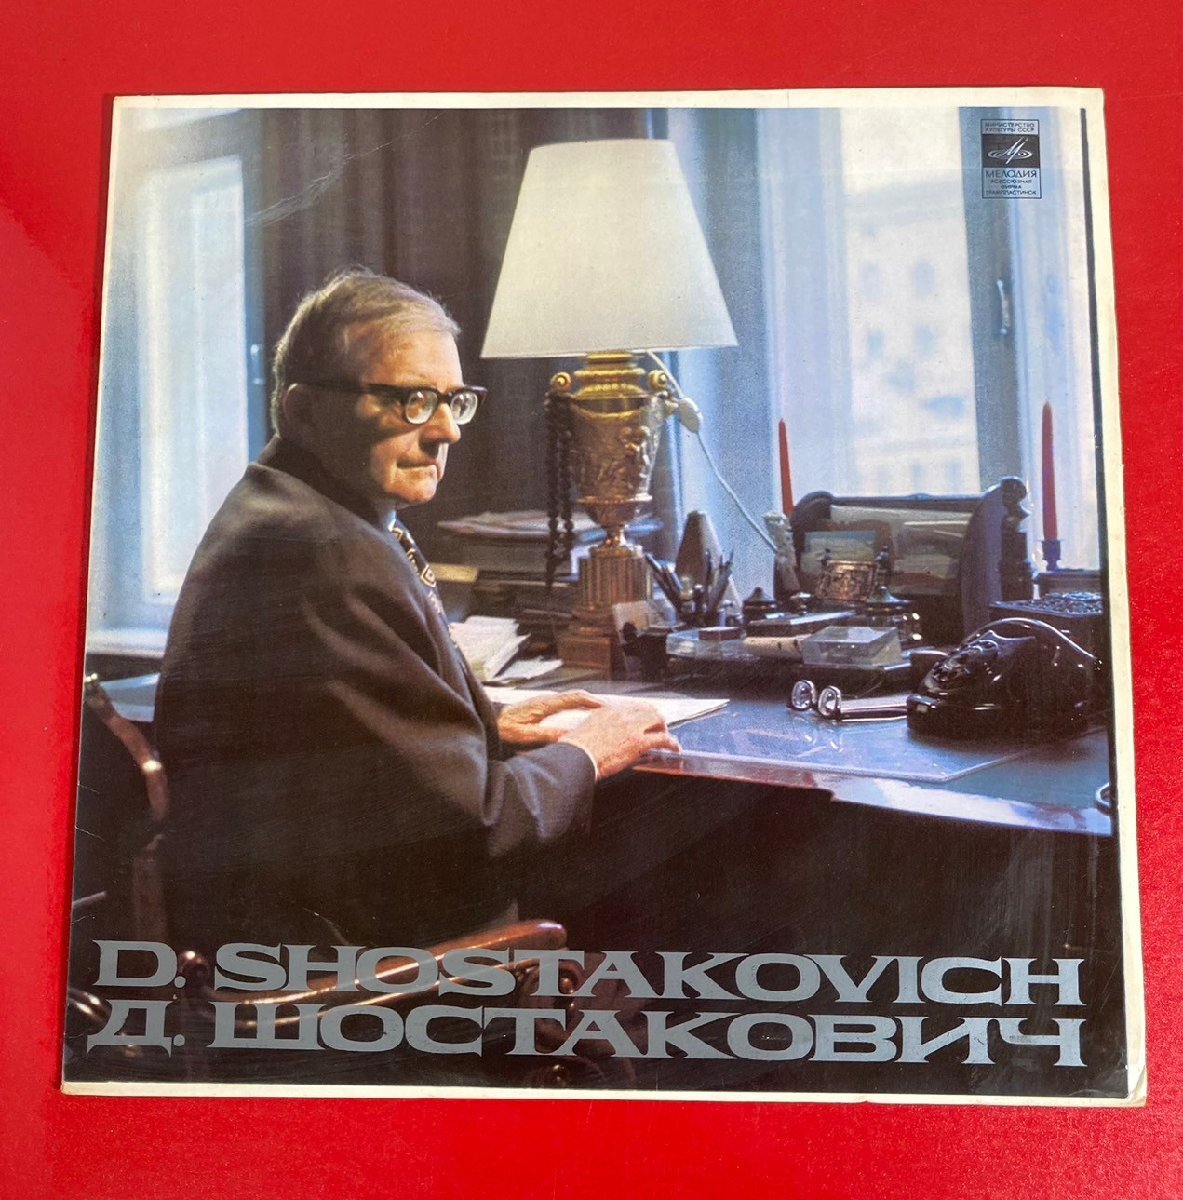 【レコードコレクター放出品】 LP コンドラシン ショスタコーヴィチ 交響曲 第8番 露メロディア盤の画像1